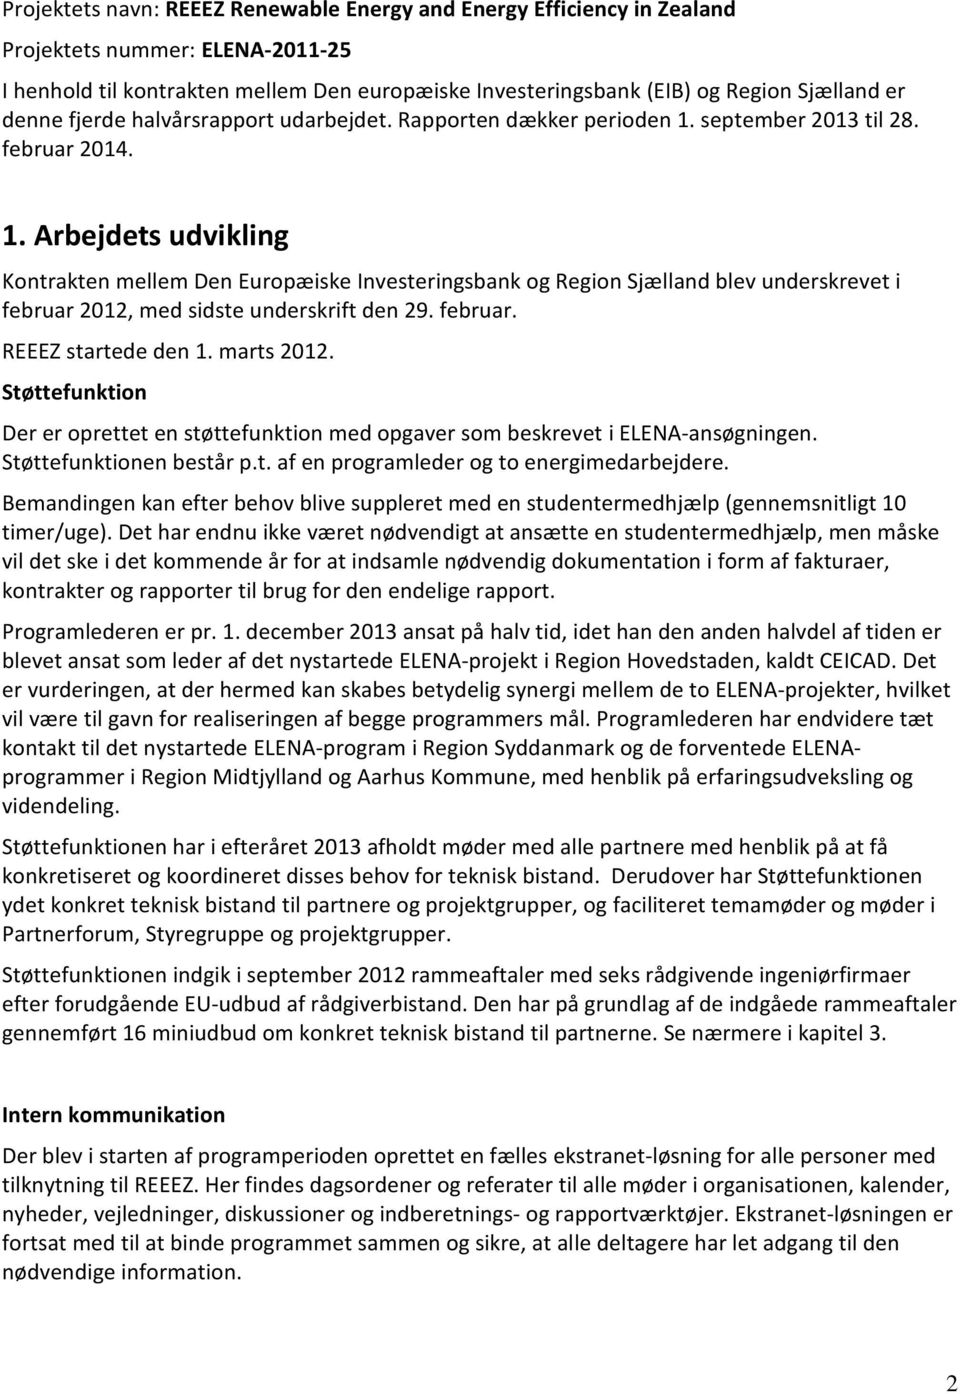 september 2013 til 28. februar 2014. 1. Arbejdets udvikling Kontrakten mellem Den Europæiske Investeringsbank og Region Sjælland blev underskrevet i februar 2012, med sidste underskrift den 29.